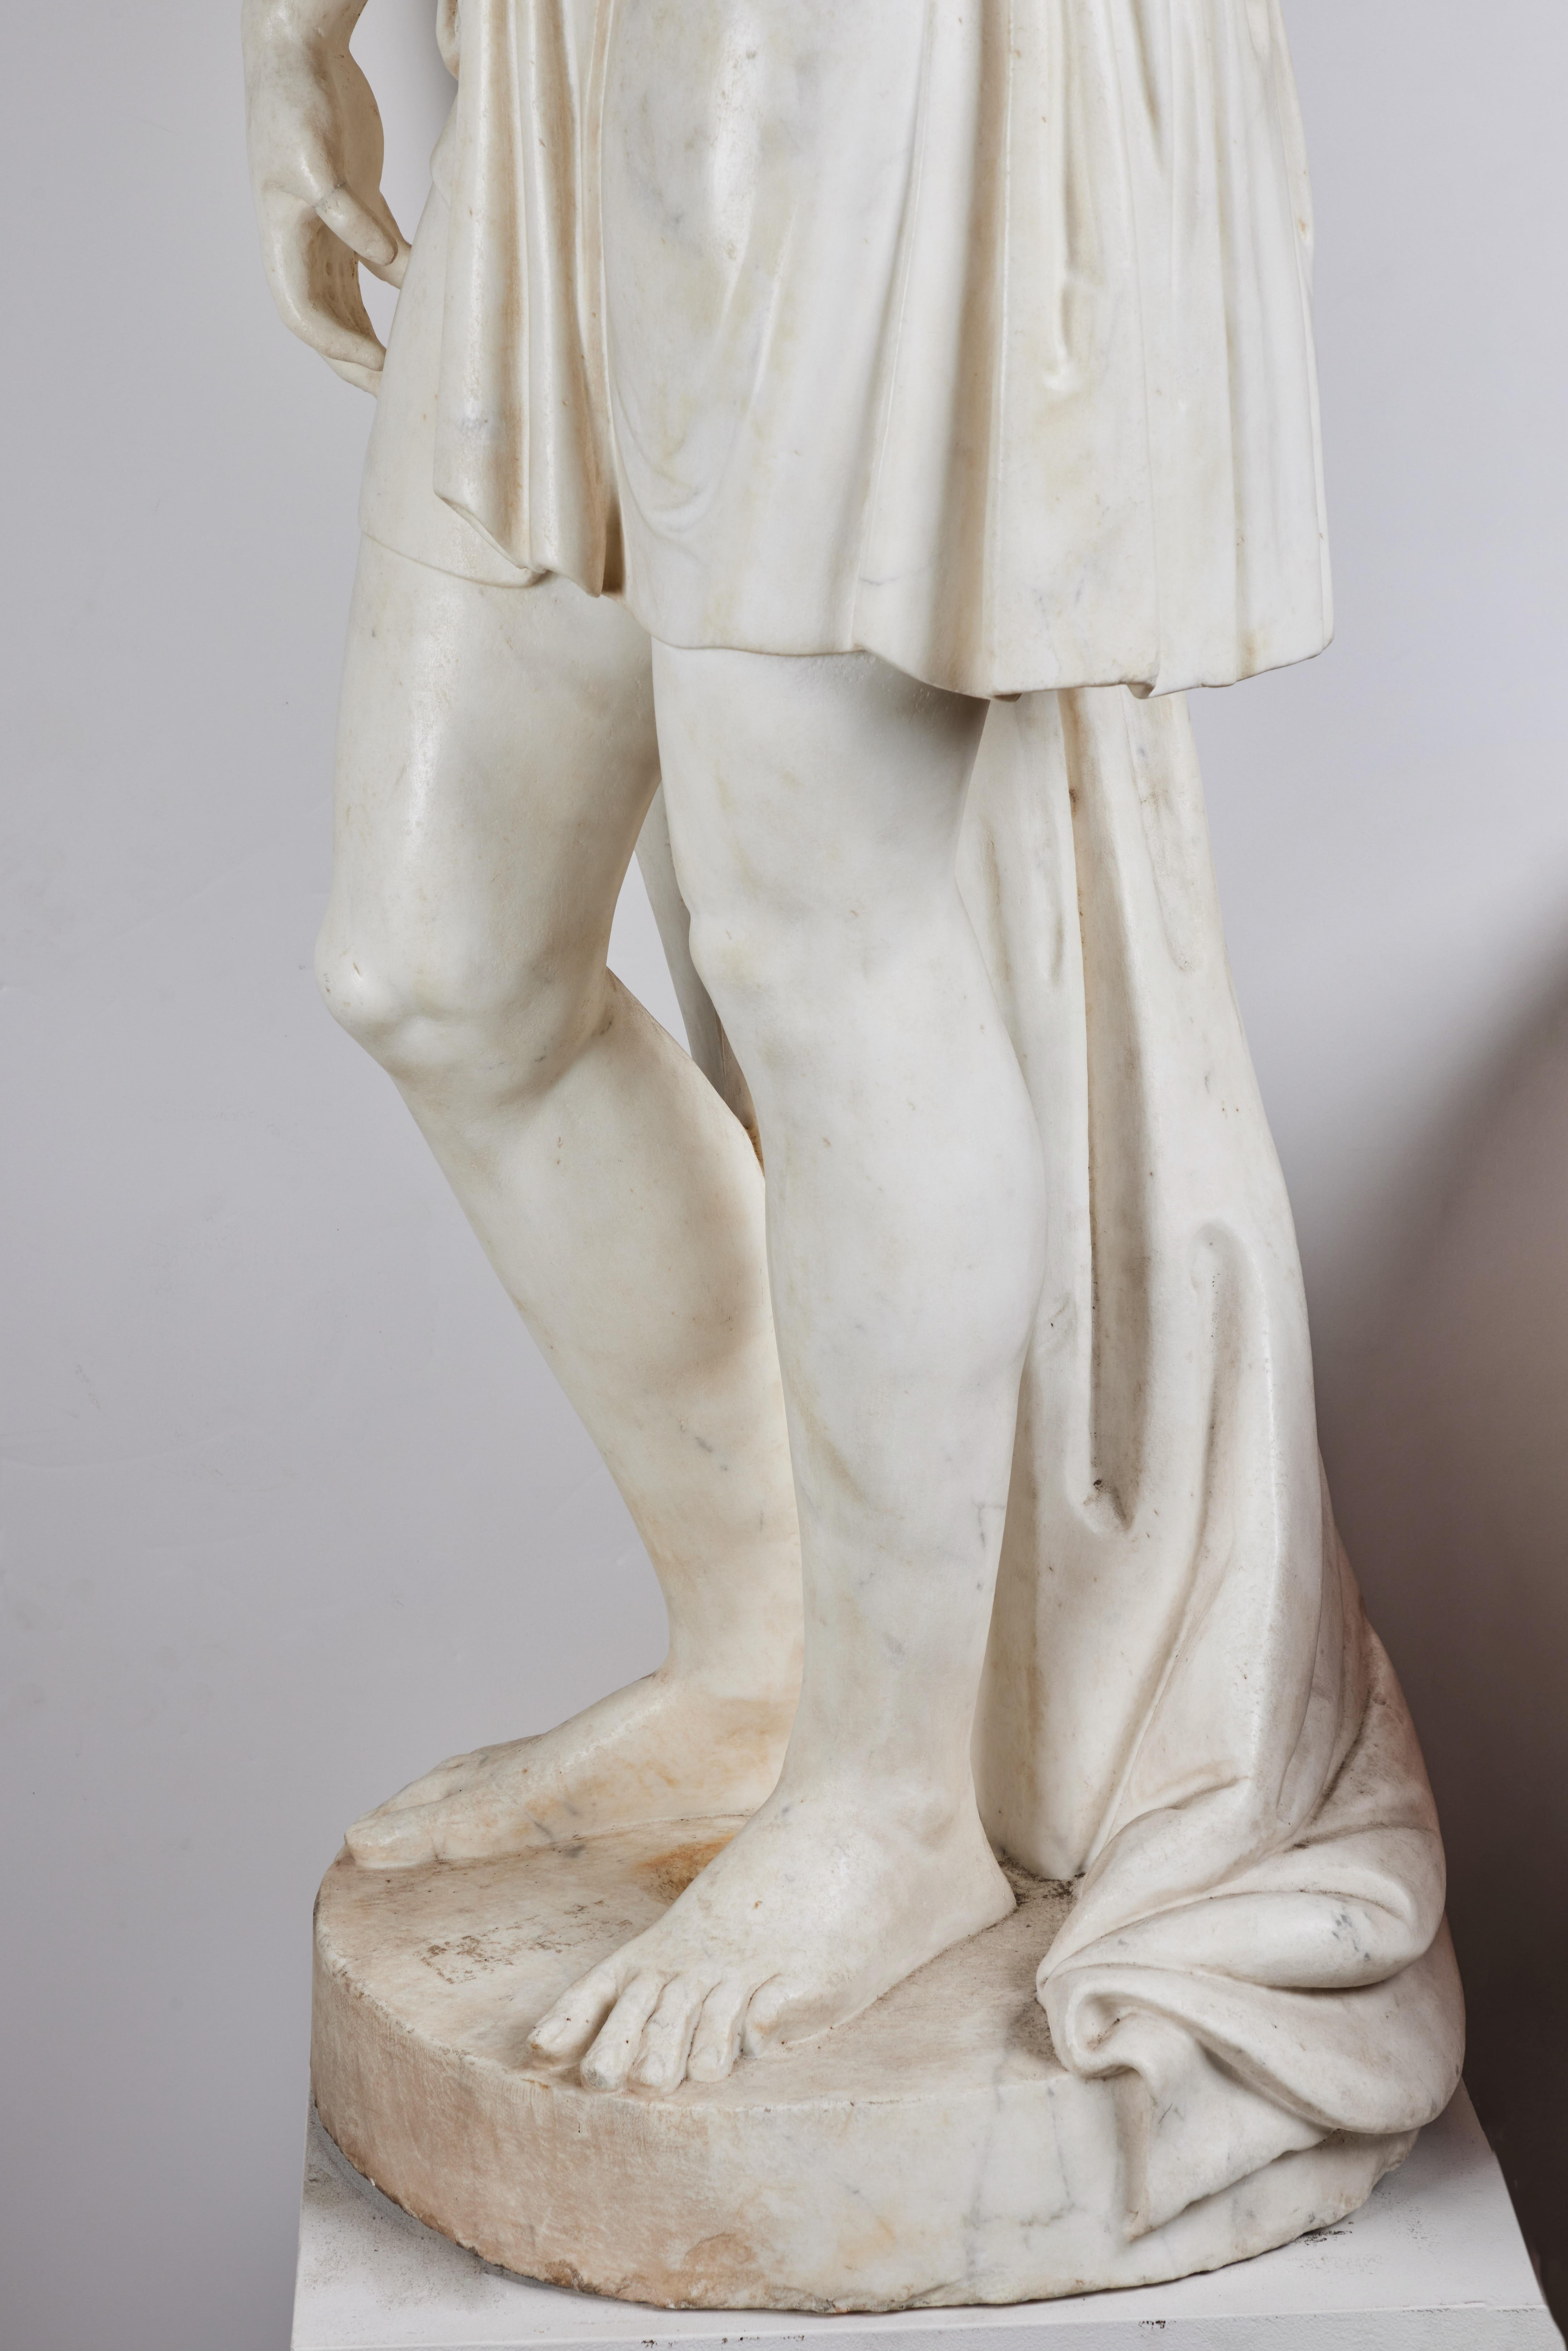 Eine wunderschön handgeschnitzte, lebensgroße Figur aus Carrara-Marmor, die einen Jungen darstellt. Das Gewand ist elegant mit Spangen drapiert.